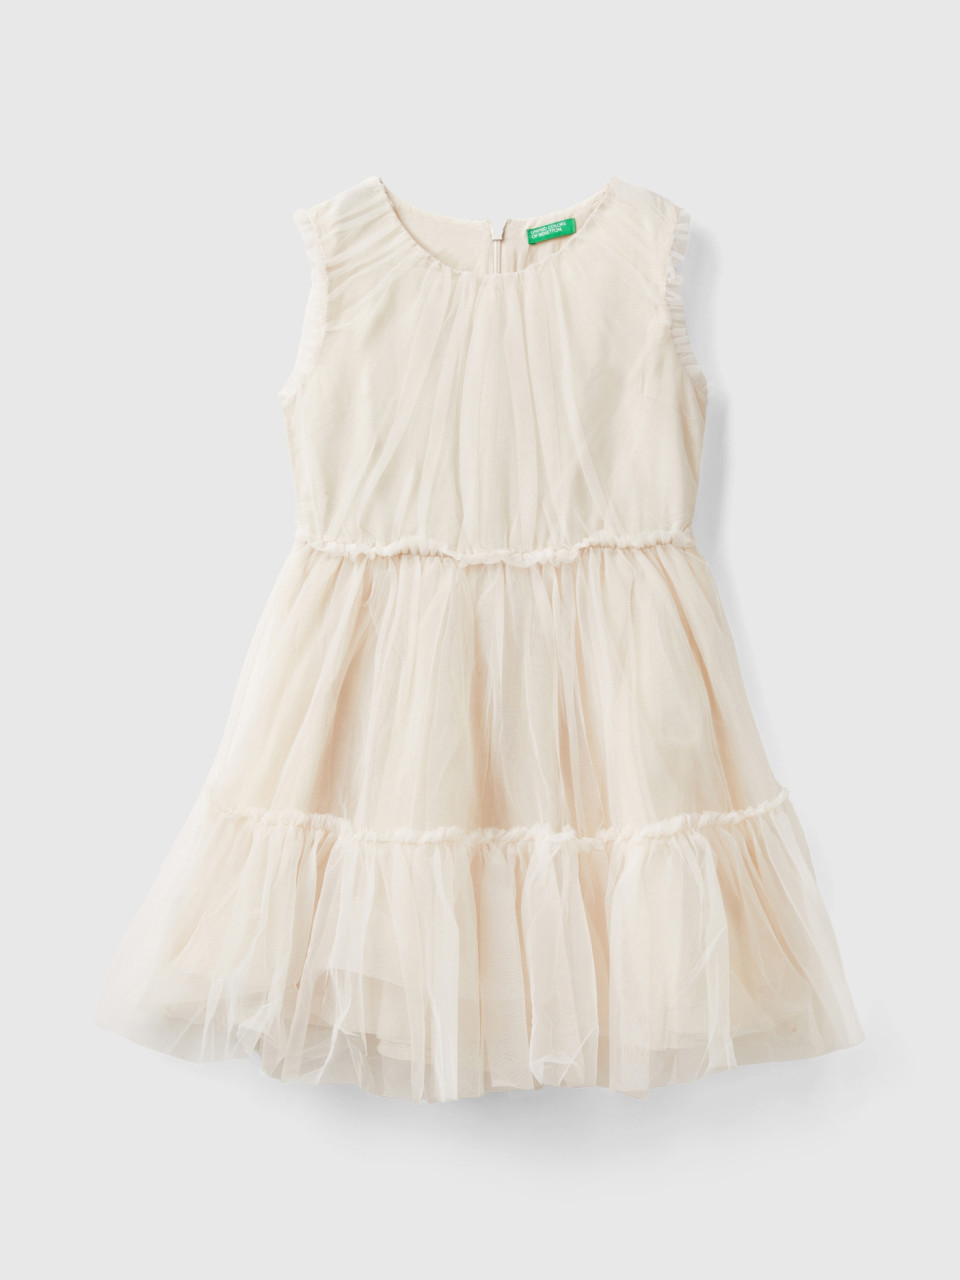 Benetton, Short Tulle Dress, Creamy White, Kids